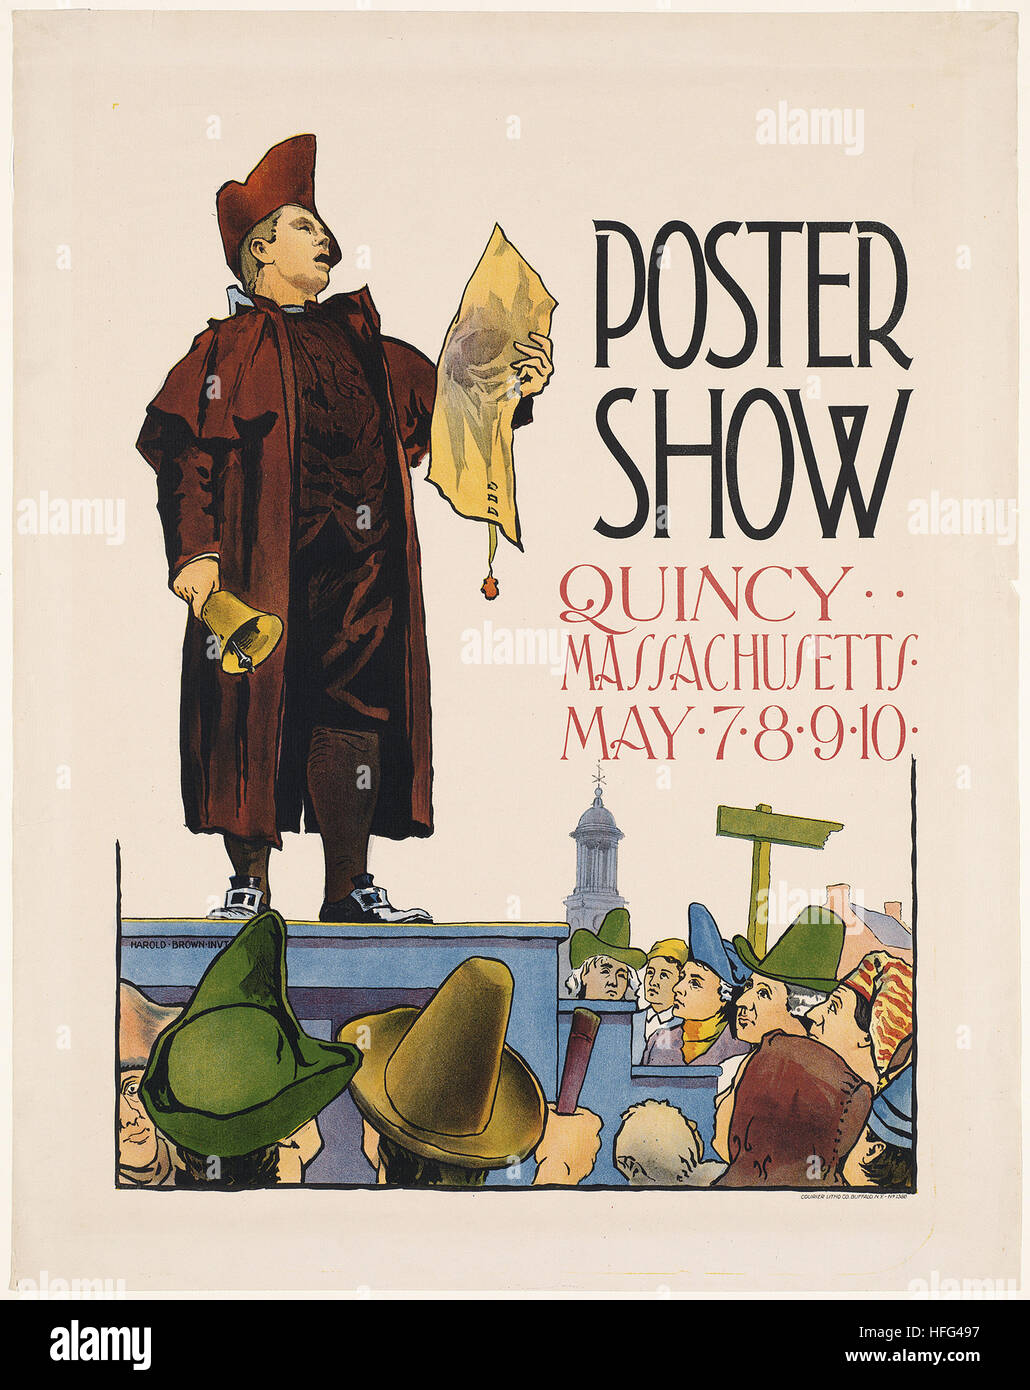 Sesión de Posters, Quincy, Massachusetts el 7 de mayo, 8, 9, 10 Foto de stock